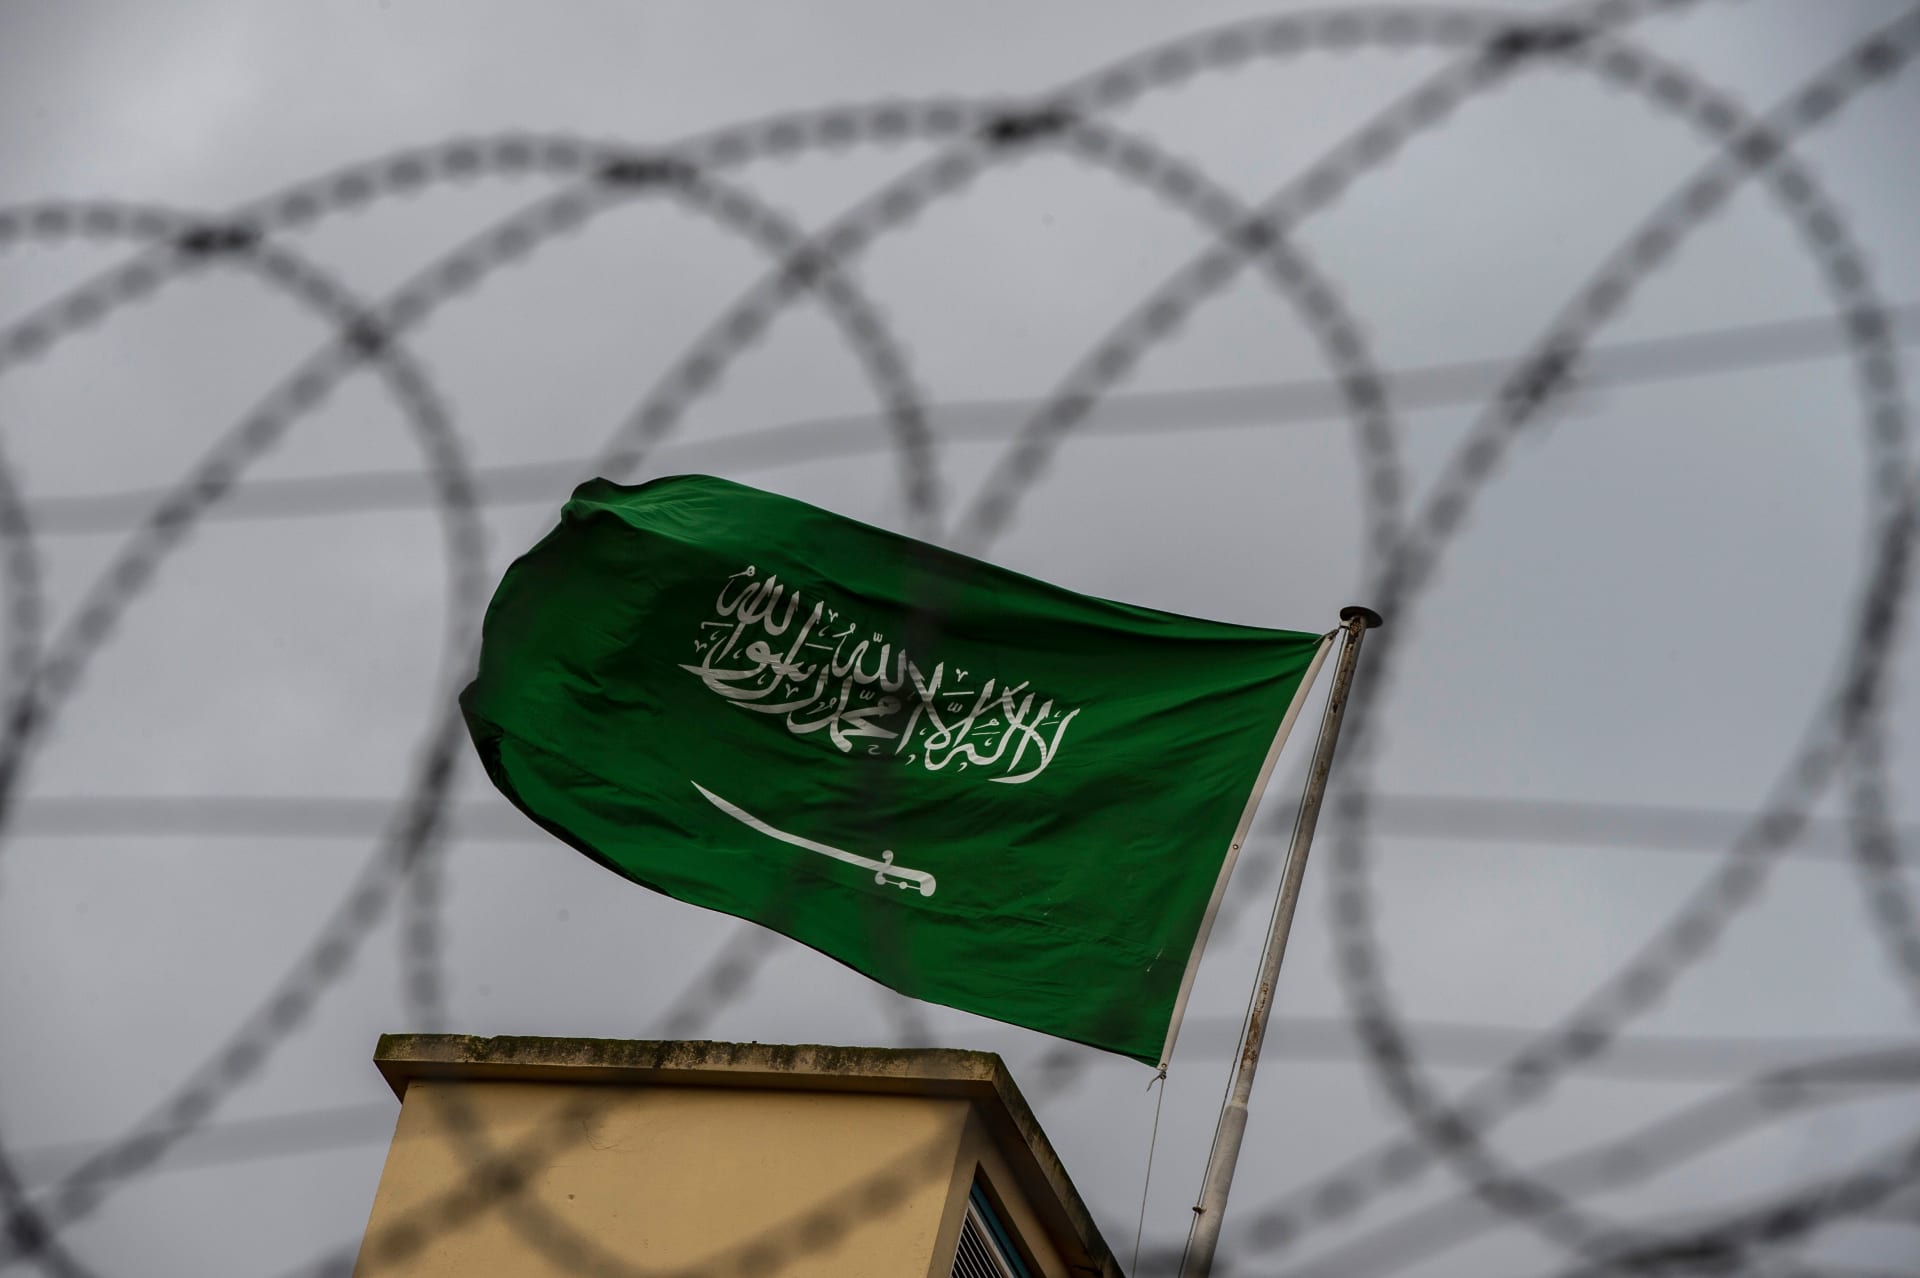 السعودية تُفرج عن مرتجى قريريص أحد "أصغر المعتقلين السياسيين" في سجونها